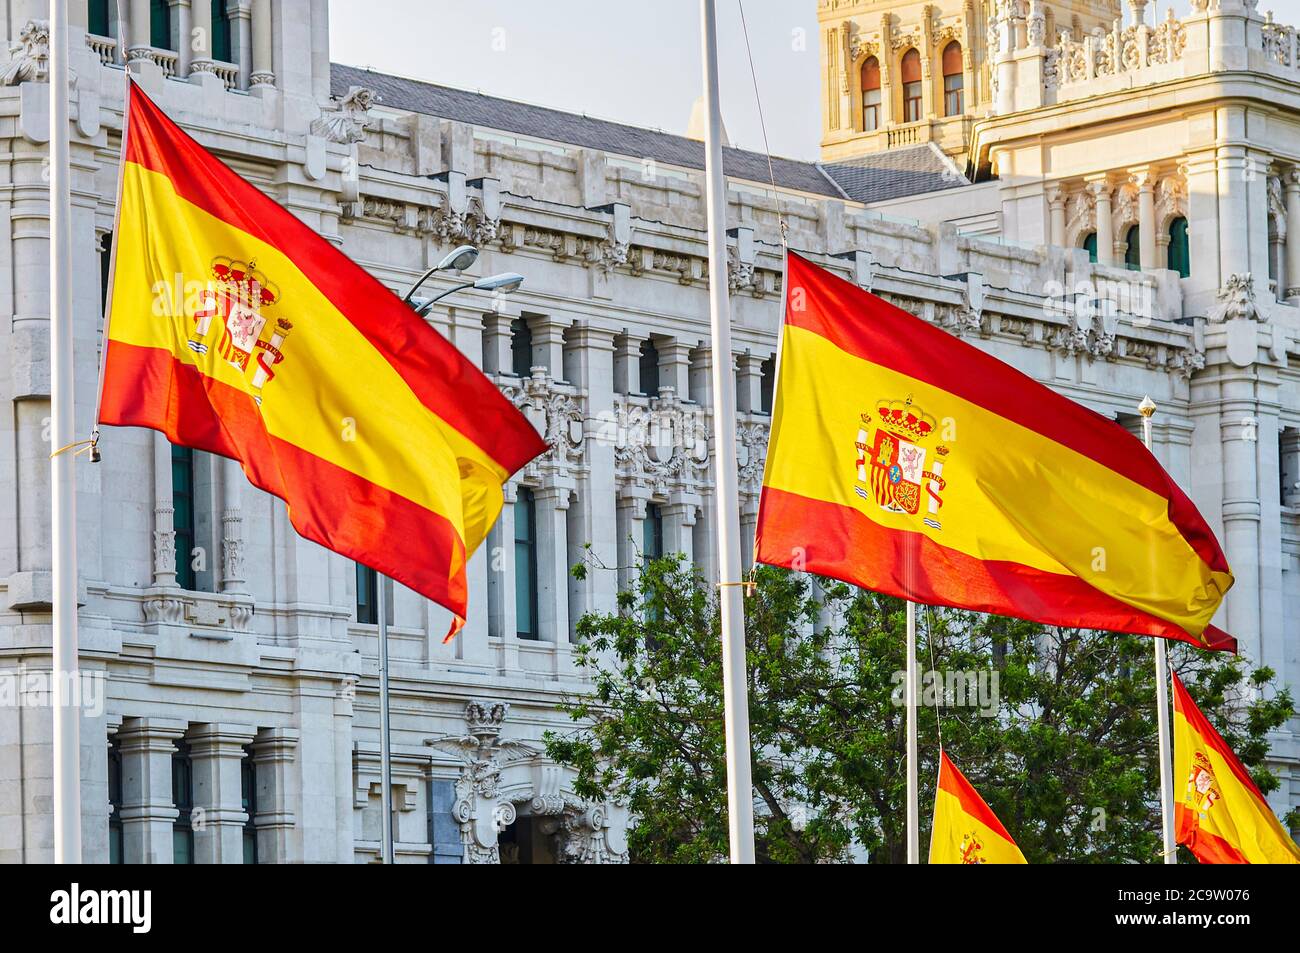 Madrid, Spagna - 25 maggio 2020: In Spagna le bandiere volano a metà albero come segno di lutto per coloro che sono stati uccisi da Covid-19 Foto Stock